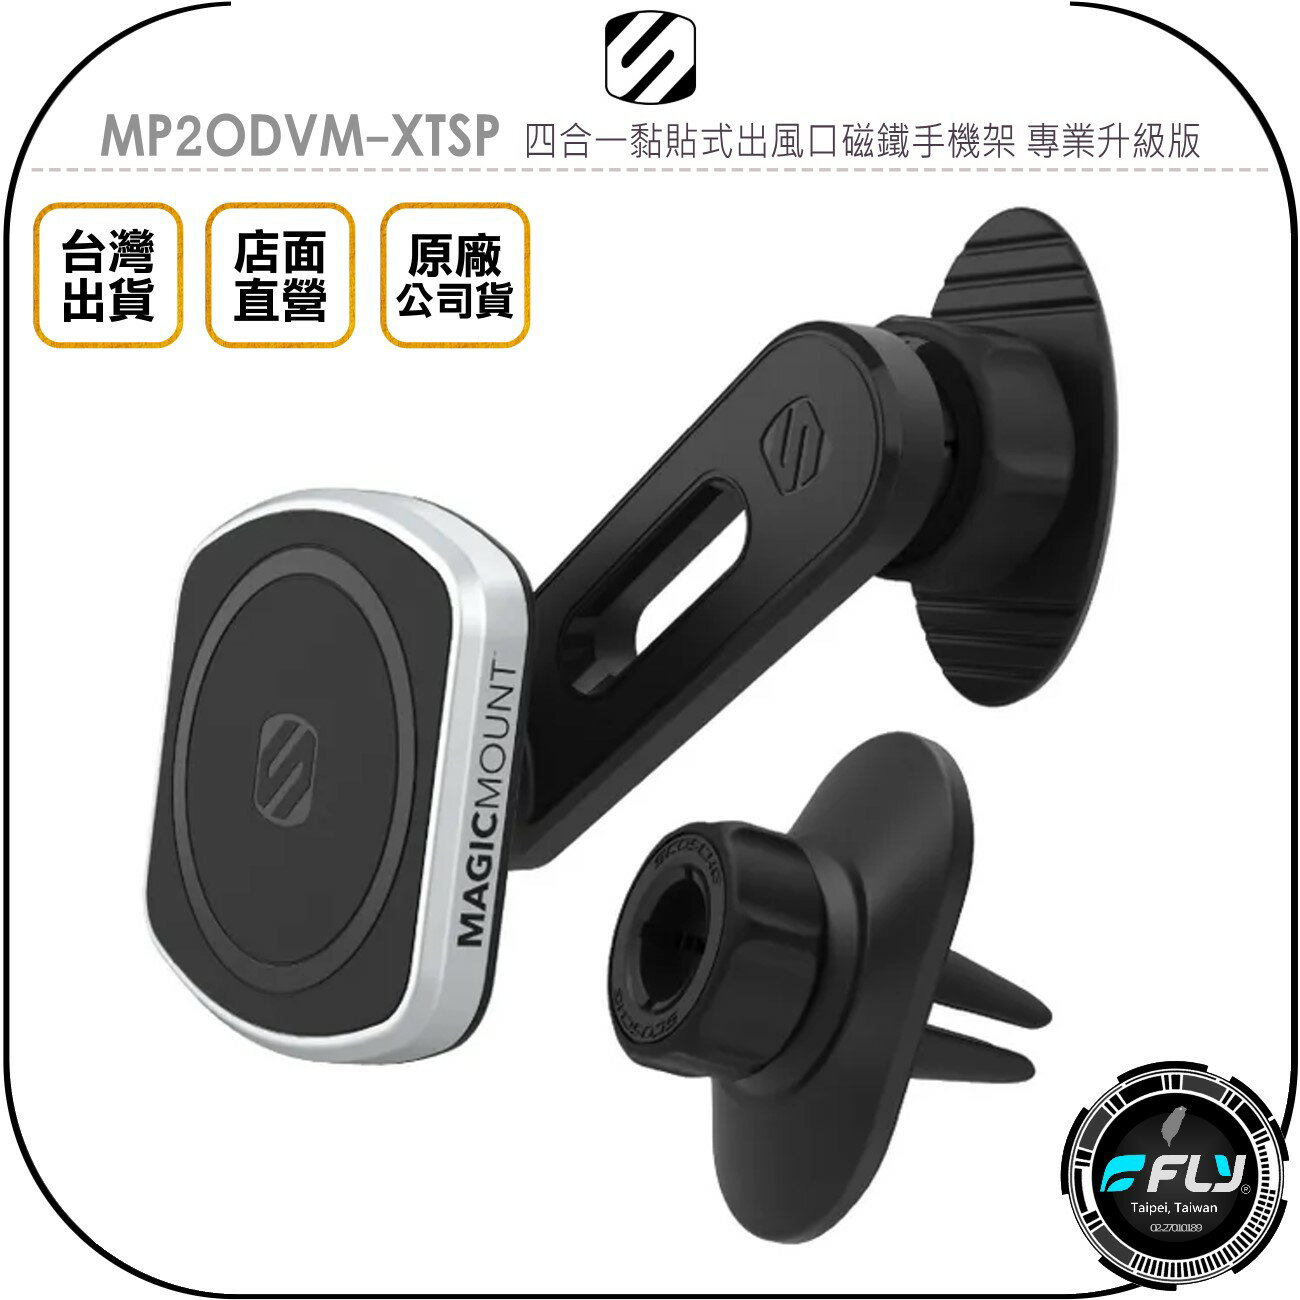 《飛翔無線3C》SCOSCHE MP2ODVM-XTSP 四合一黏貼式出風口磁鐵手機架 專業升級版◉公司貨◉車用手機座